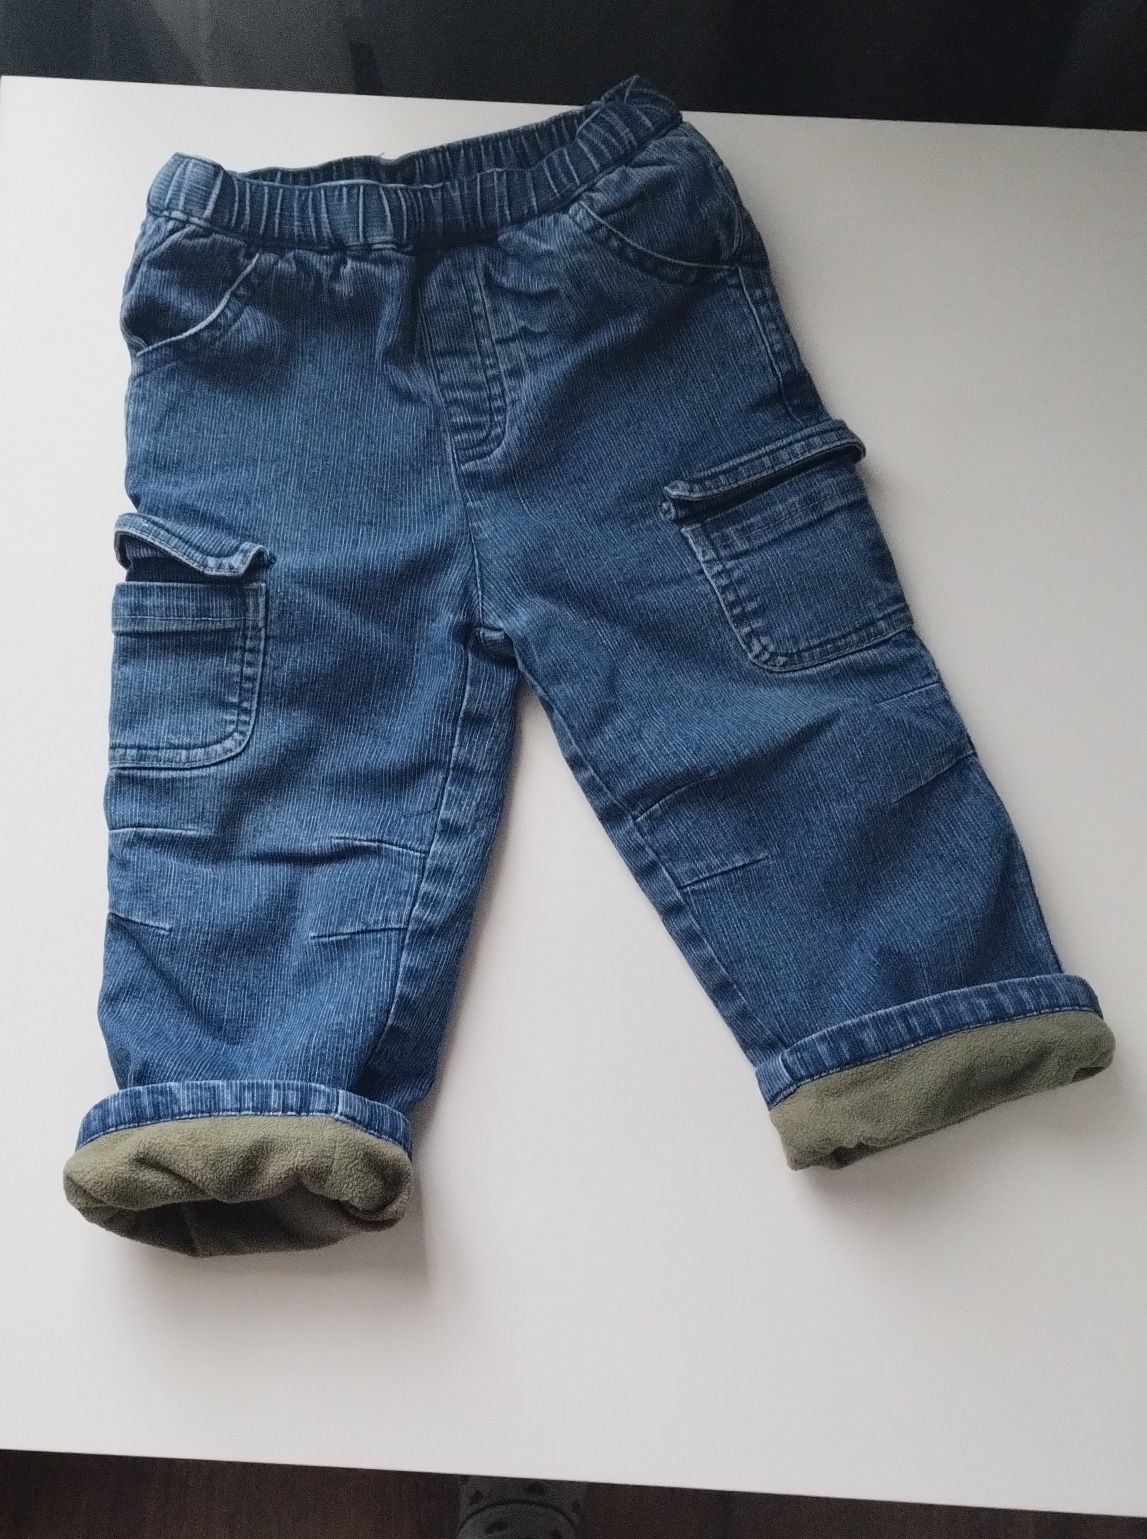 Spodnie jeansowe ocieplane r 80/86 (12/28 miesiecy)